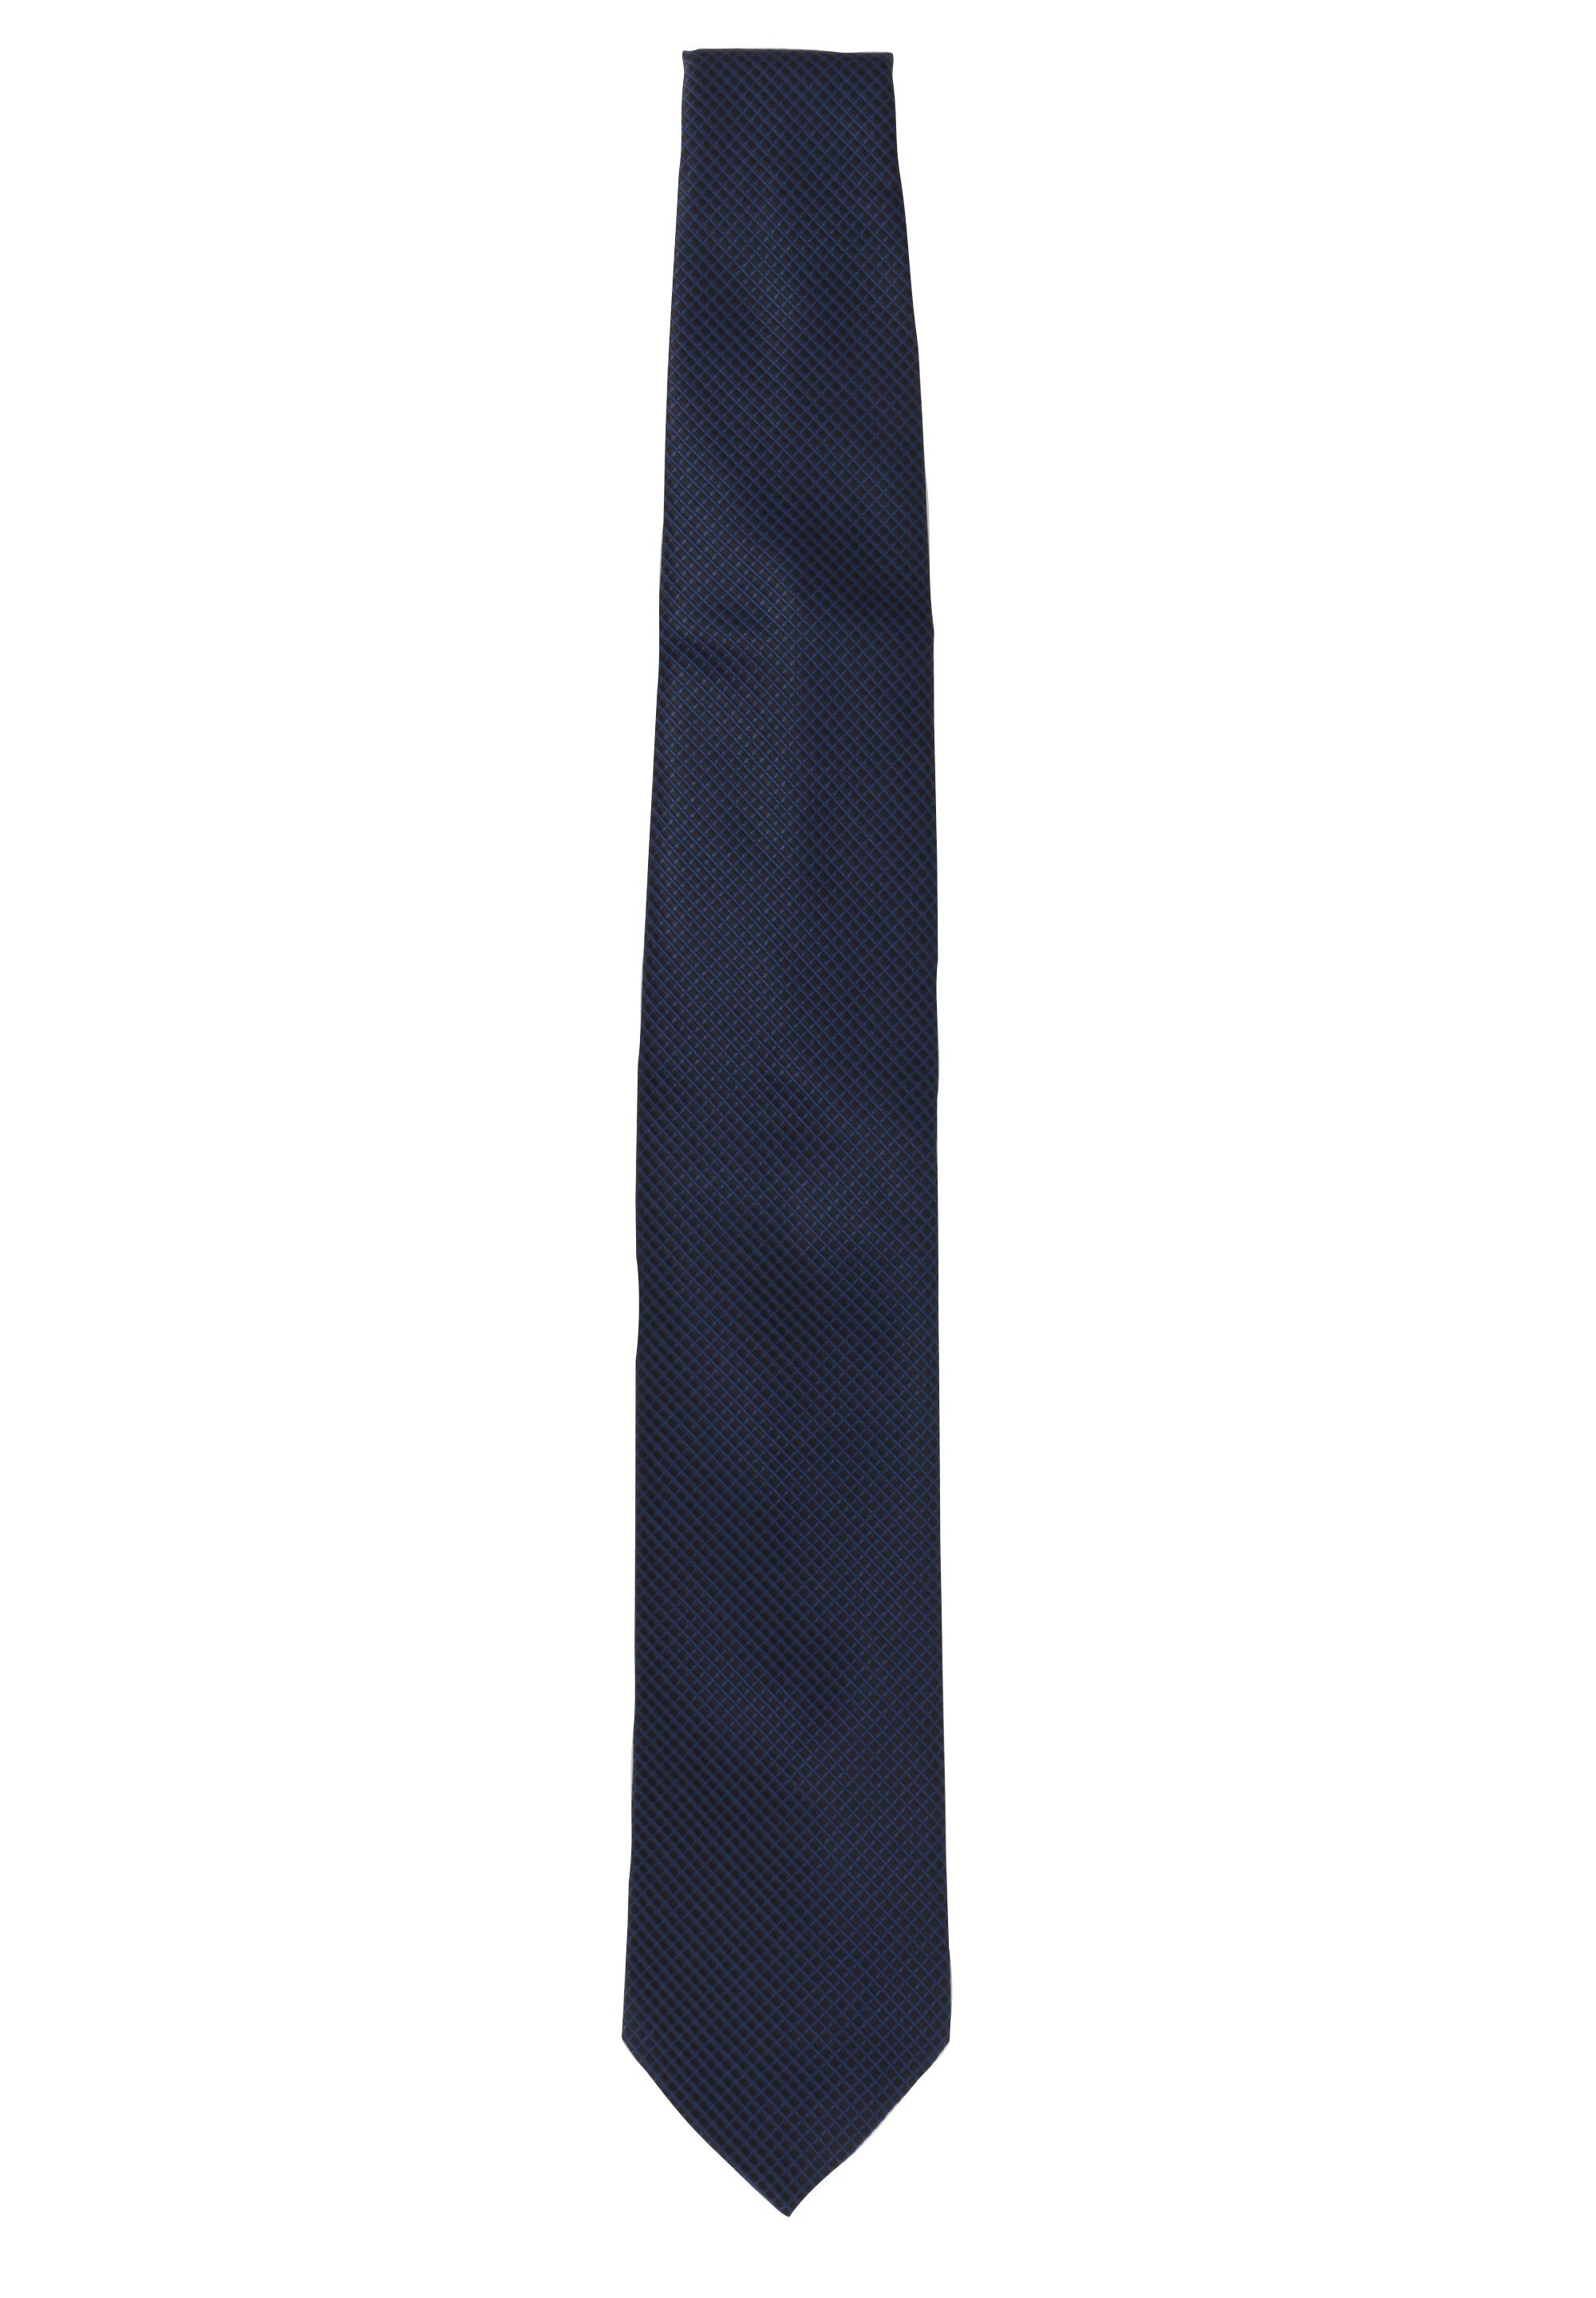 Fabio Farini Krawatte karierte Breite (ohne in Kariert) Schlips oder Krawatte Herren - 8cm 6cm (8cm), Schwarz/Dunkelblau Box, Breit